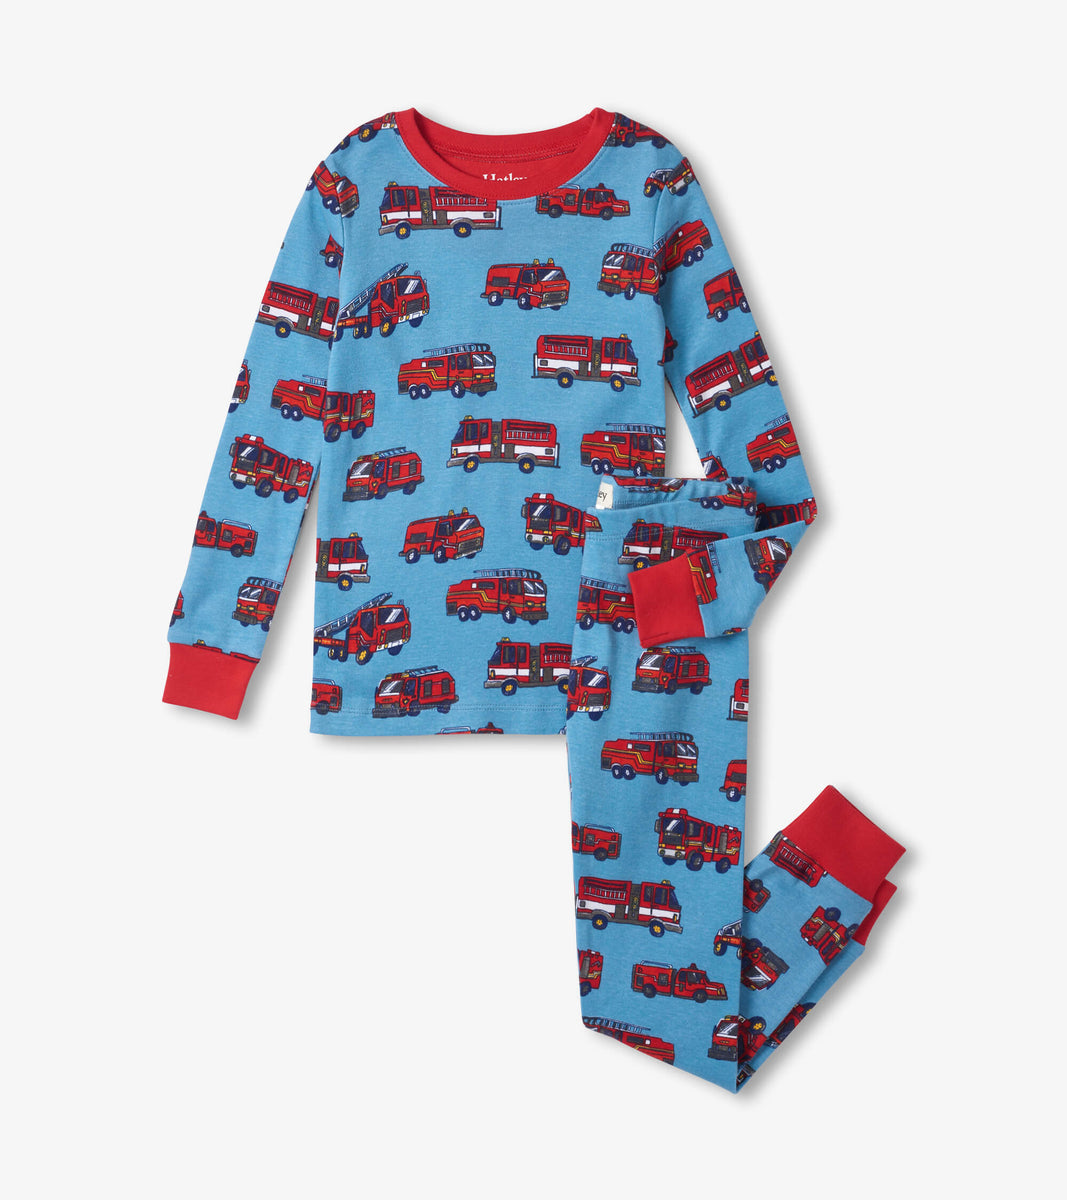 12 Days of Christmas Red Pajama Set - Hatley US